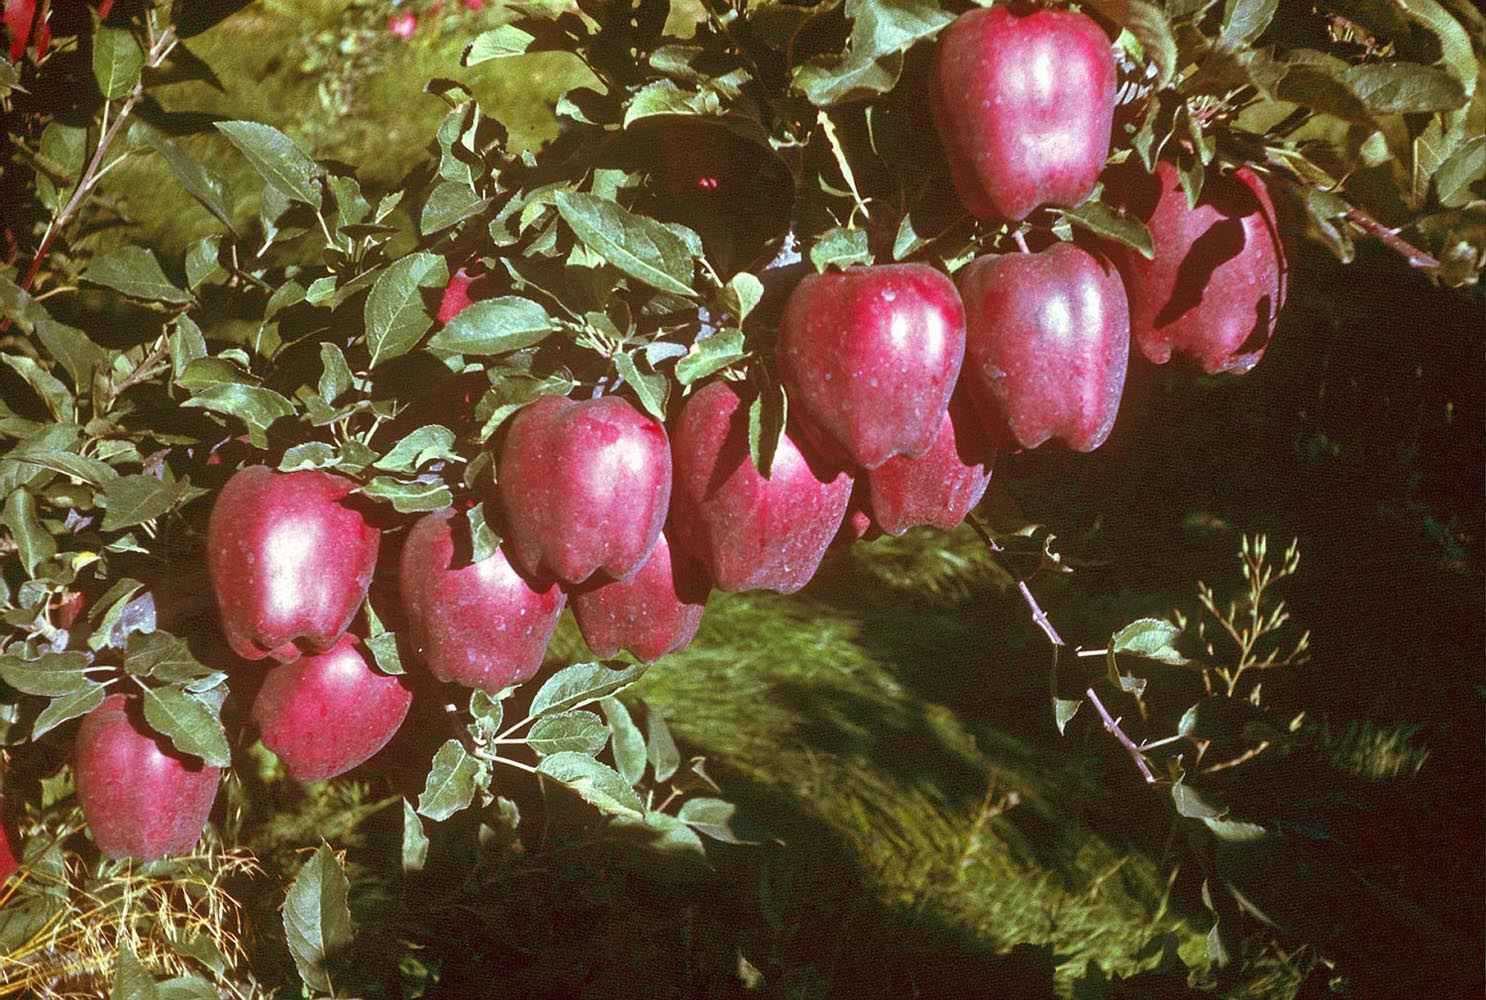 All Apple Varieties - Washington Apples